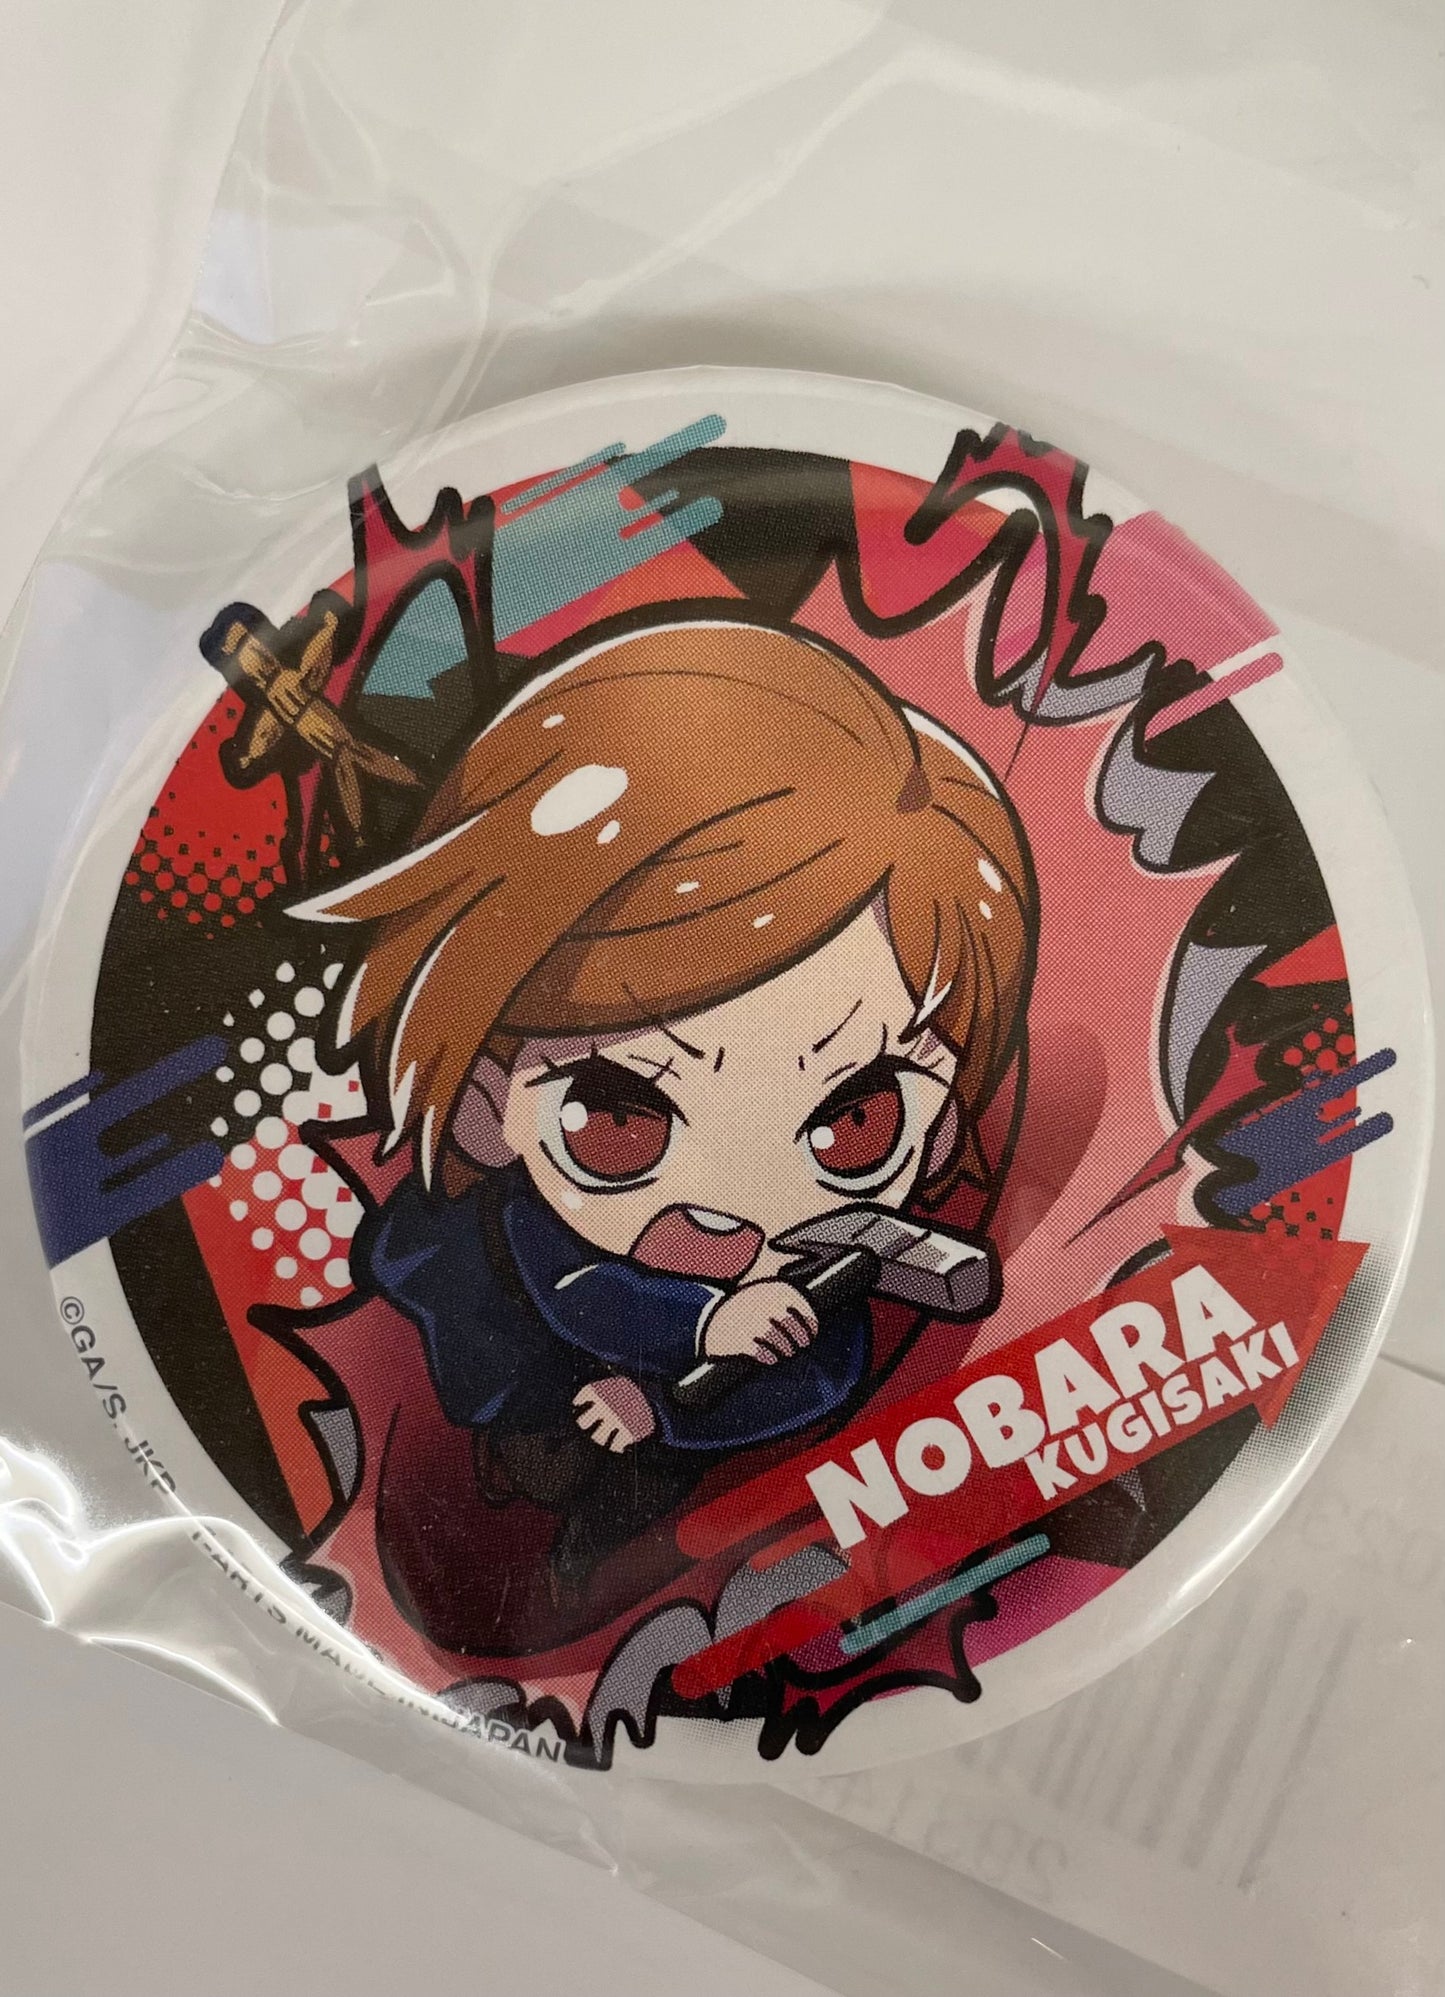 Trading Pin Badge Nobara Kugisaki Blk/Rd/Pnk